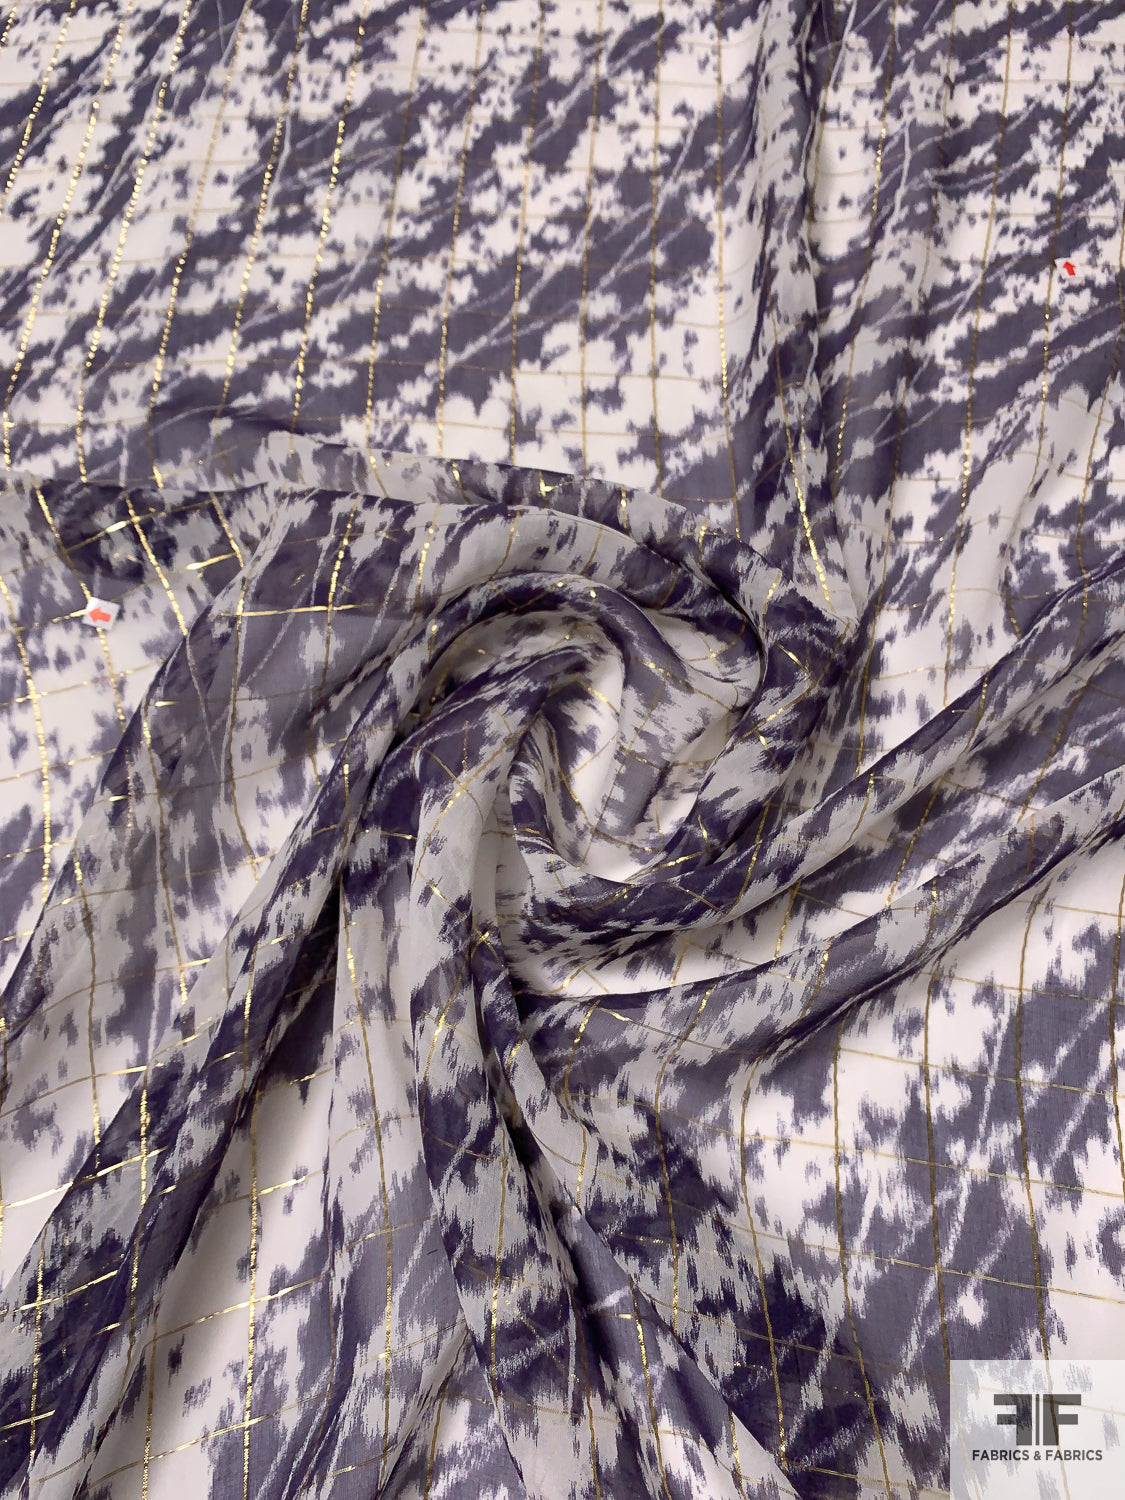 L20 Chiffon Fabric White – FabricViva